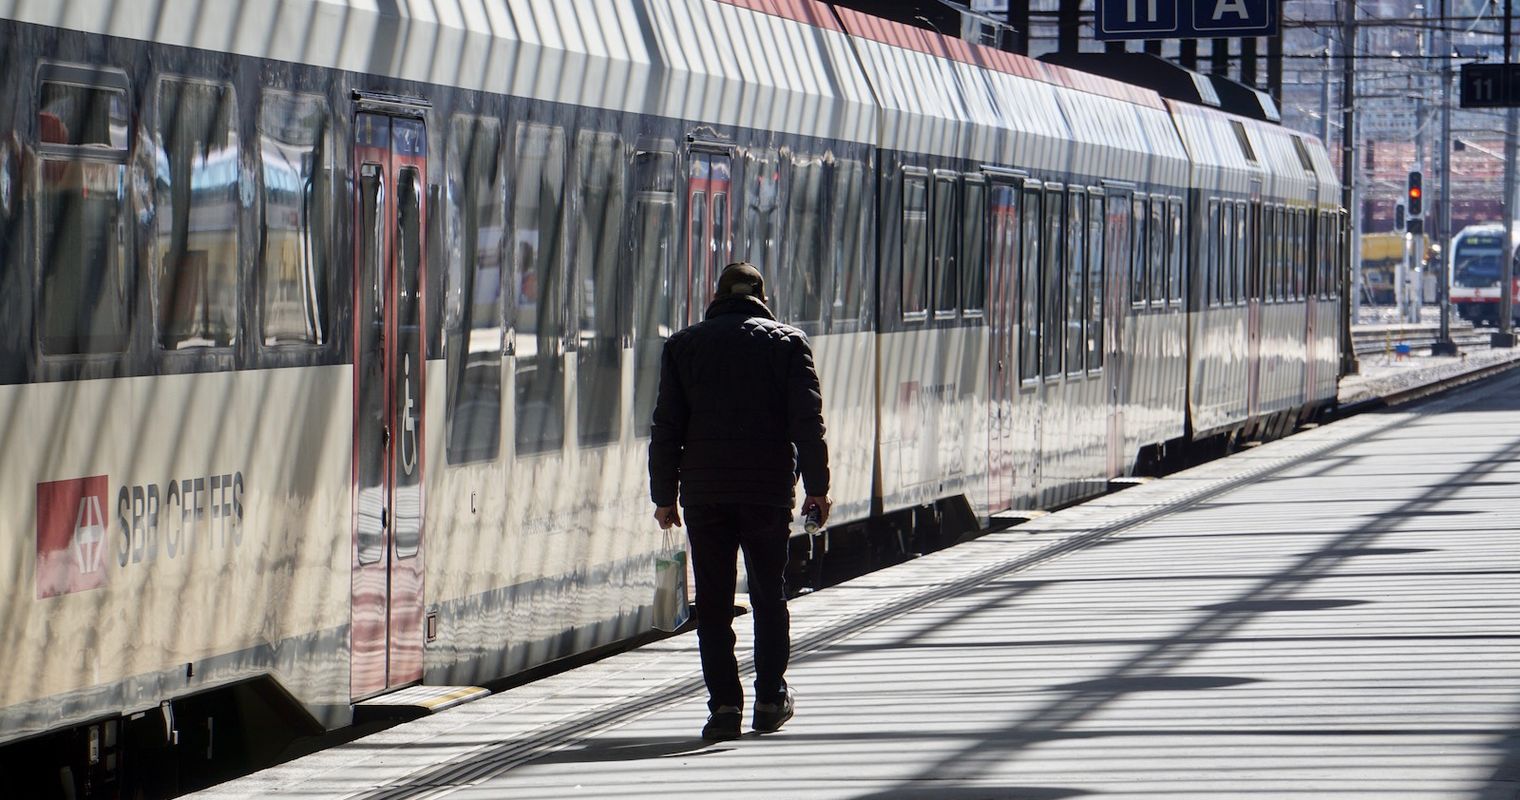 Schnellzug statt S-Bahn: Druck auf Durchgangsbahnhof steigt